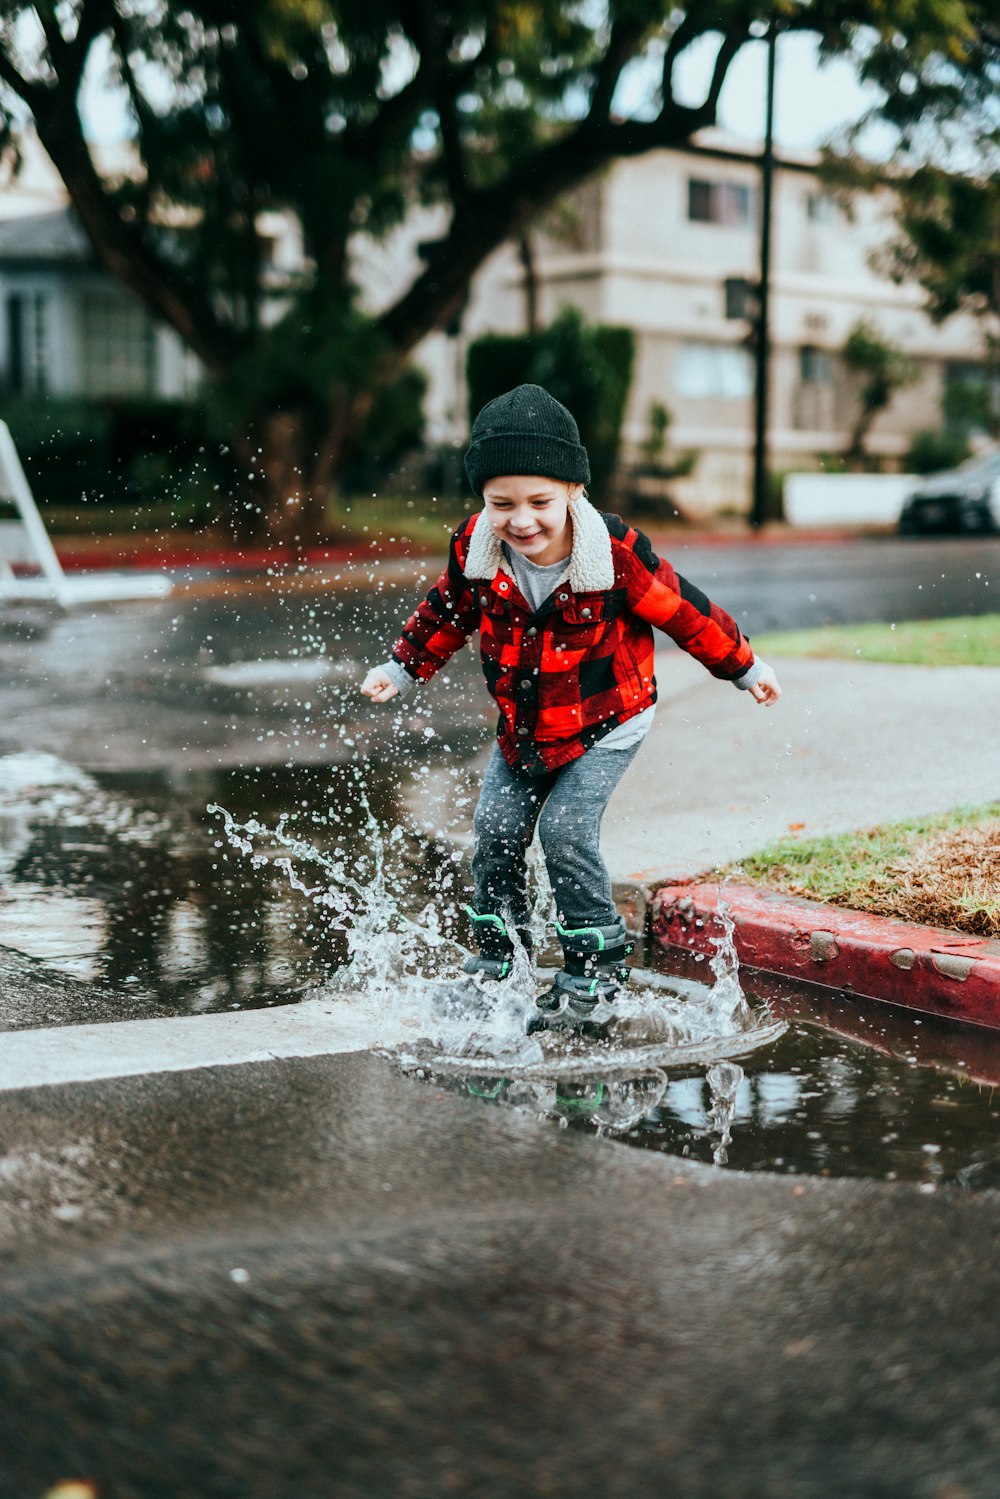 Junge in rot-schwarzer Jacke und schwarzer Strickmütze läuft tagsüber auf nasser Straße